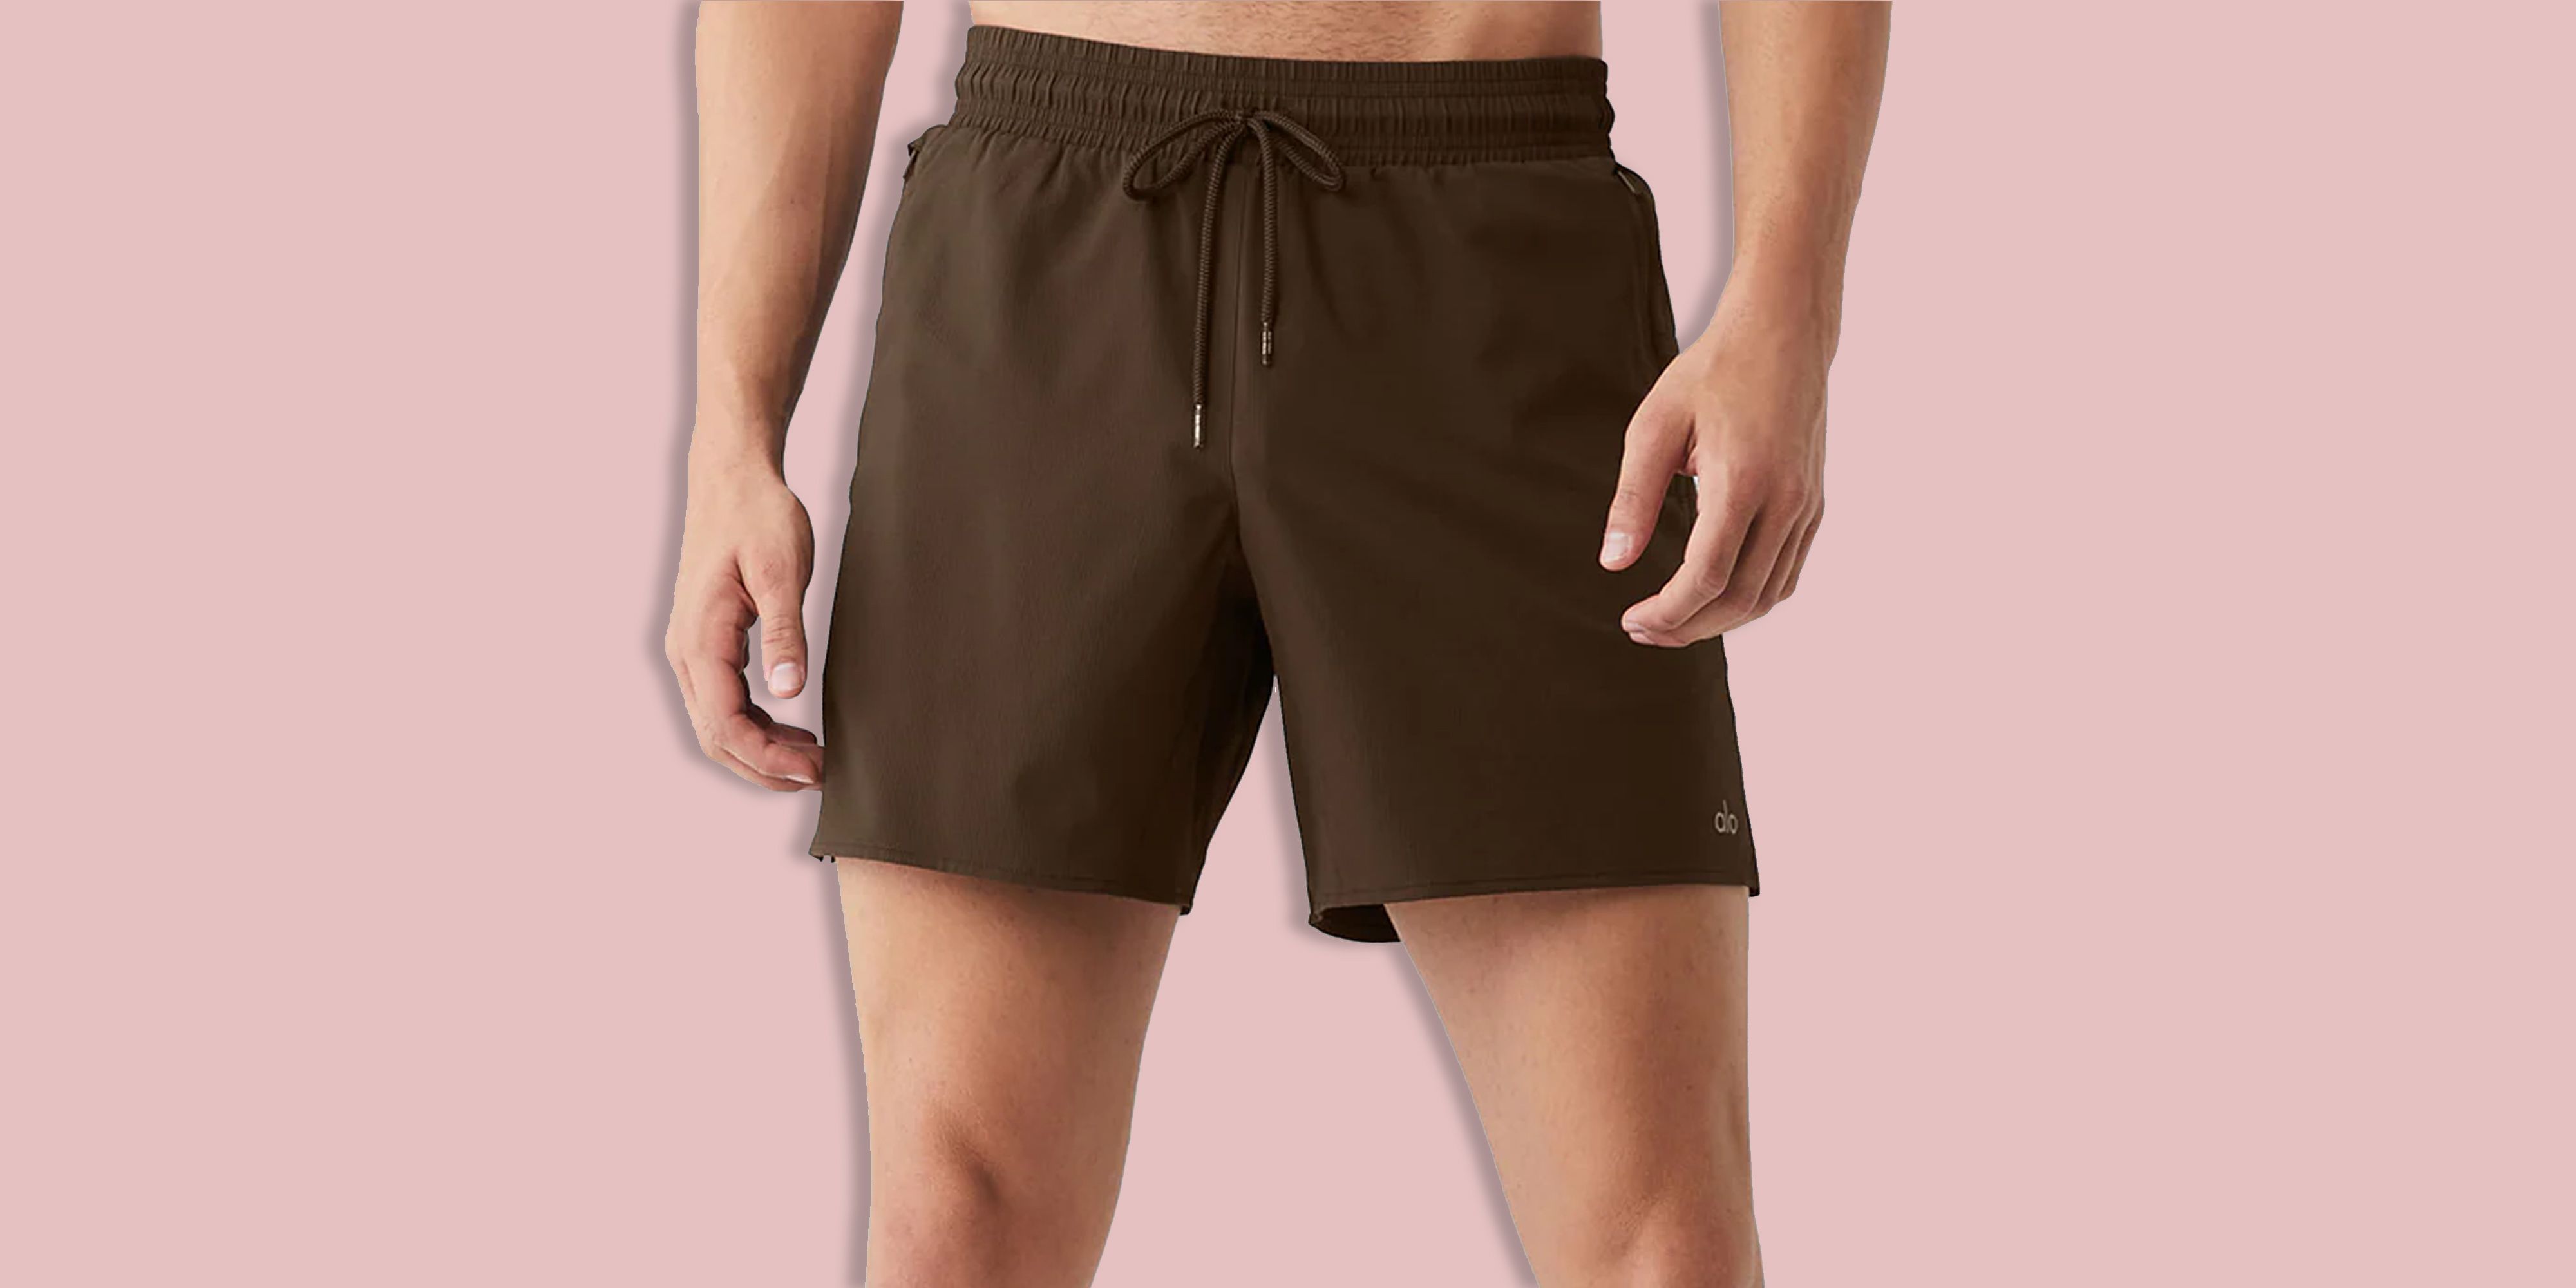 Men's Sweat Resistant Active Performance Shorts Cotton Short